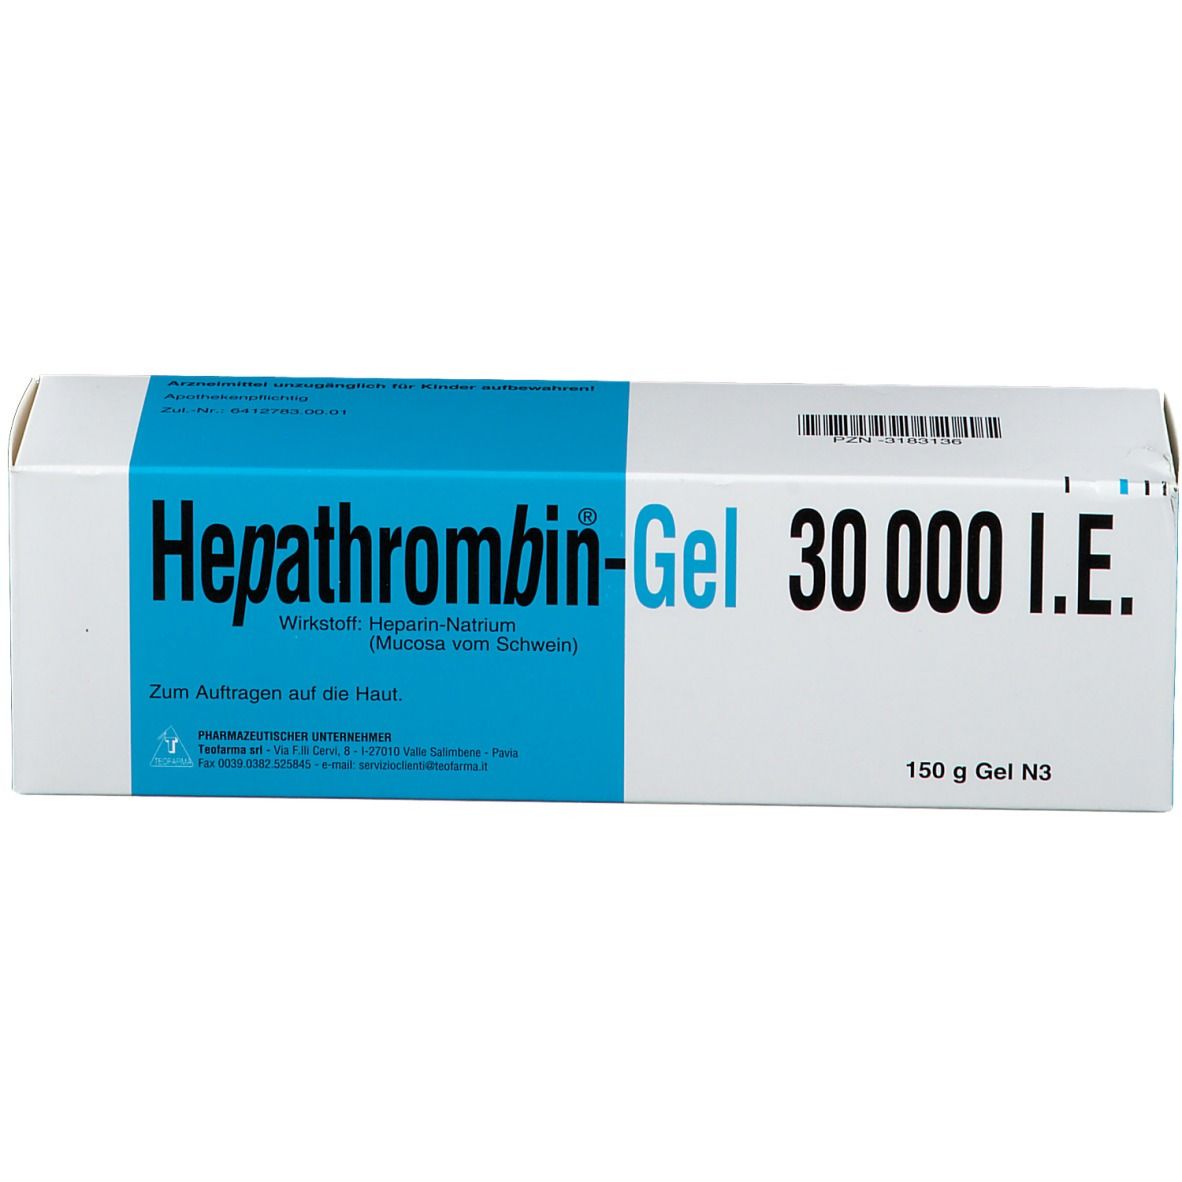 Hepathrombin® Gel 30 000